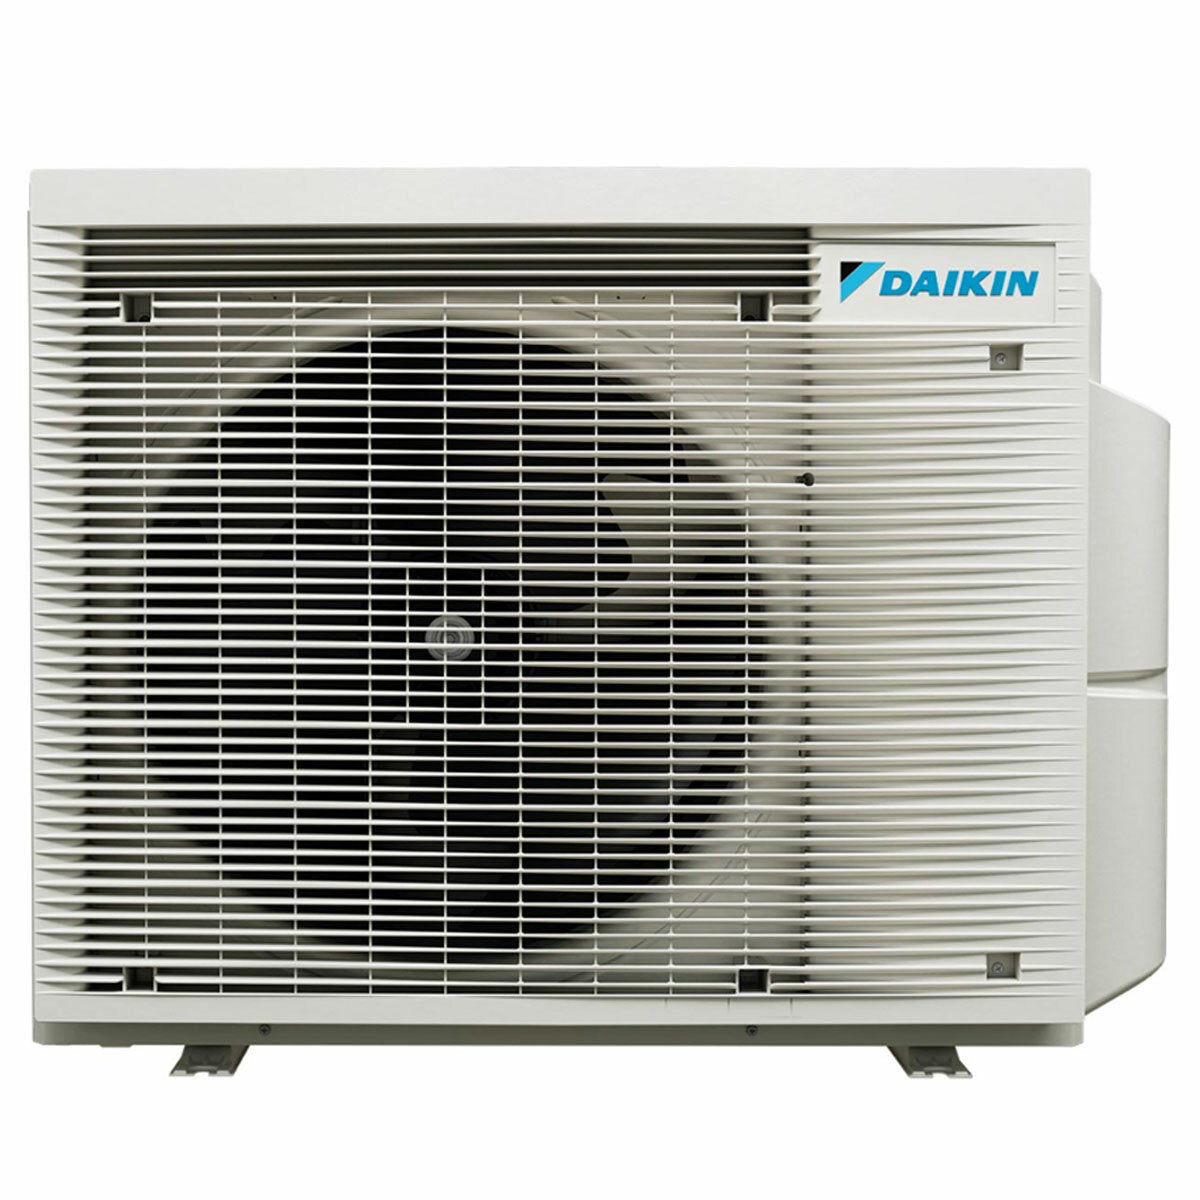 Daikin Stylish White trial split air conditioner 7000+9000+18000 BTU inverter A++ wifi external unit 6.8 kW